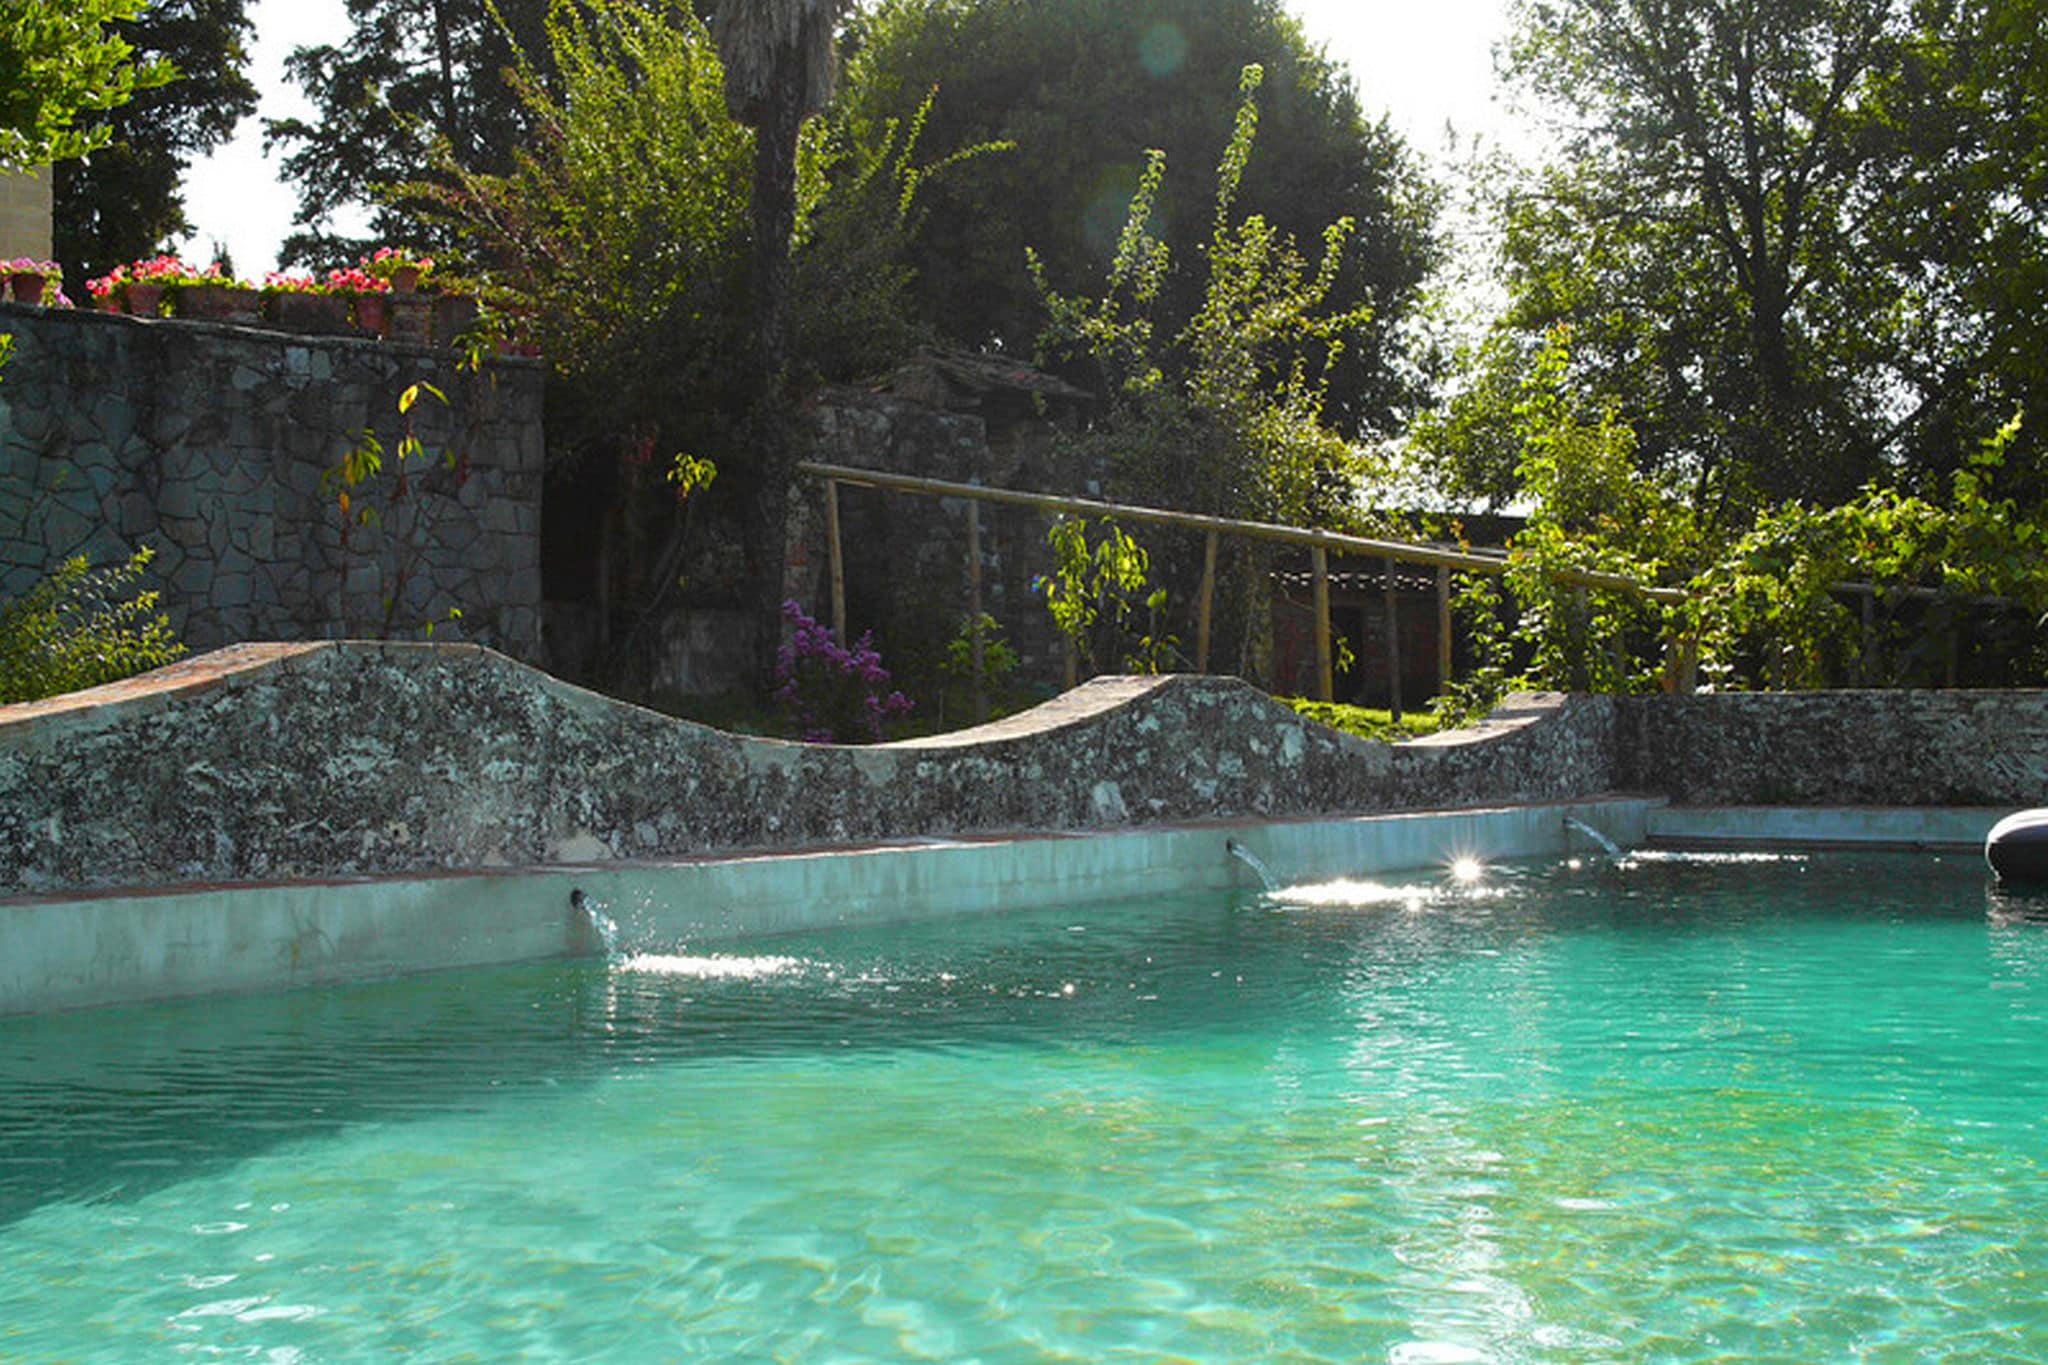 Prachtige villa op een heuvel net buiten Florence met weelderige tuin en zwembad